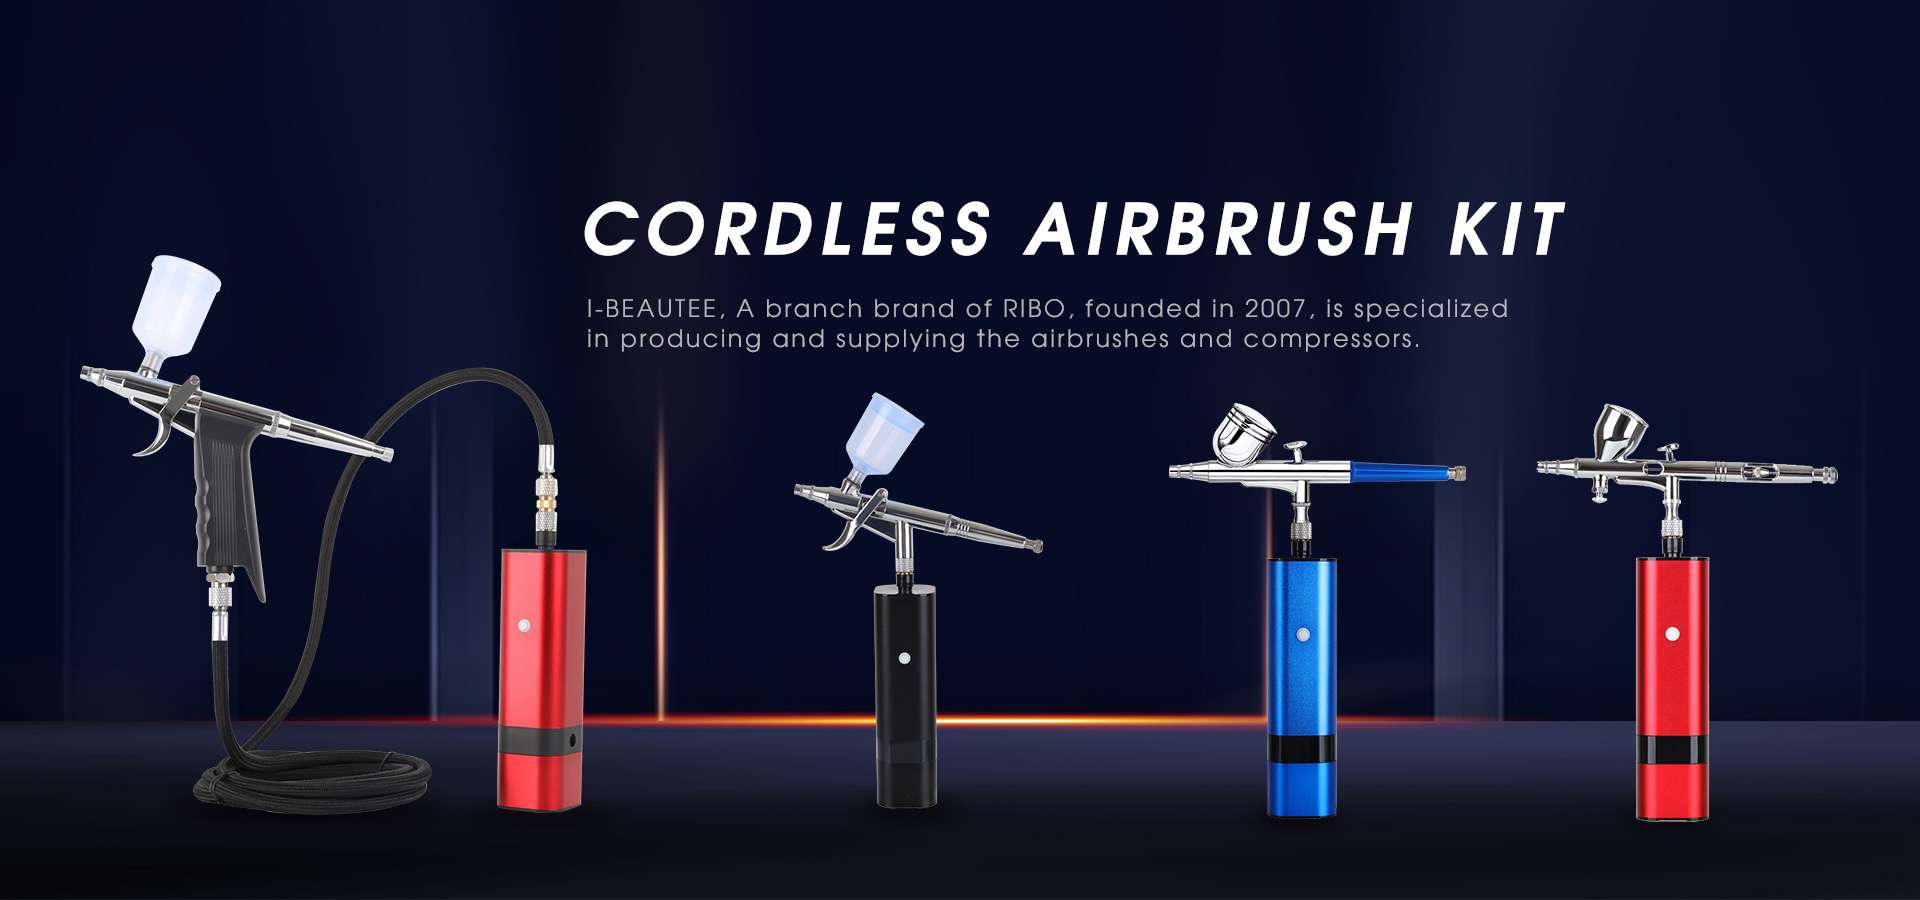 Cordless Airbrush Kit